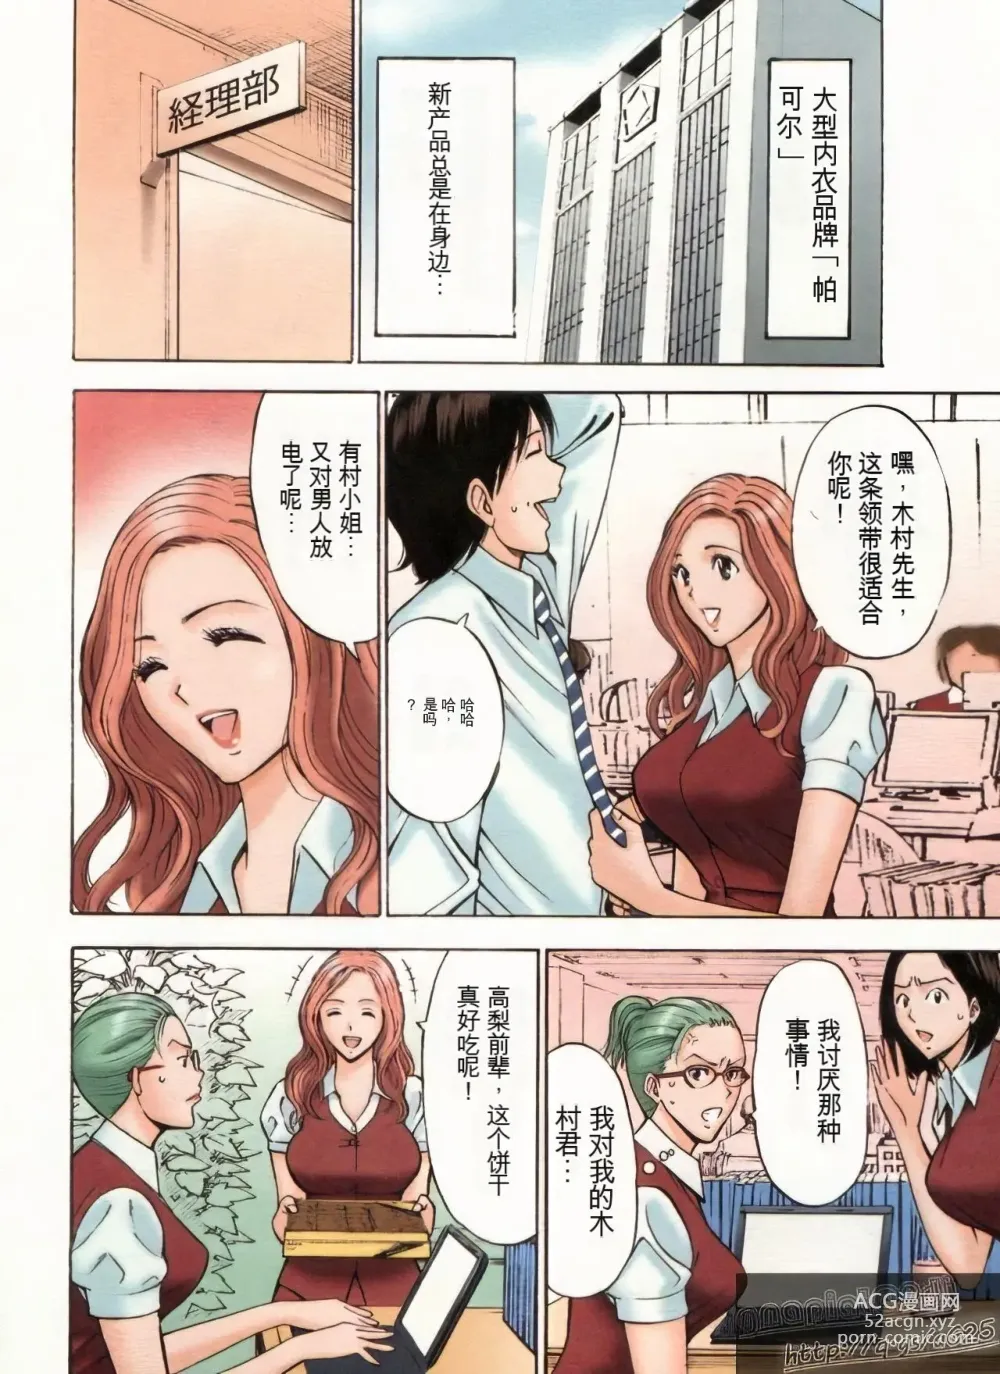 Page 29 of manga Chounyuu Bakunyuu Kabushikigaisha